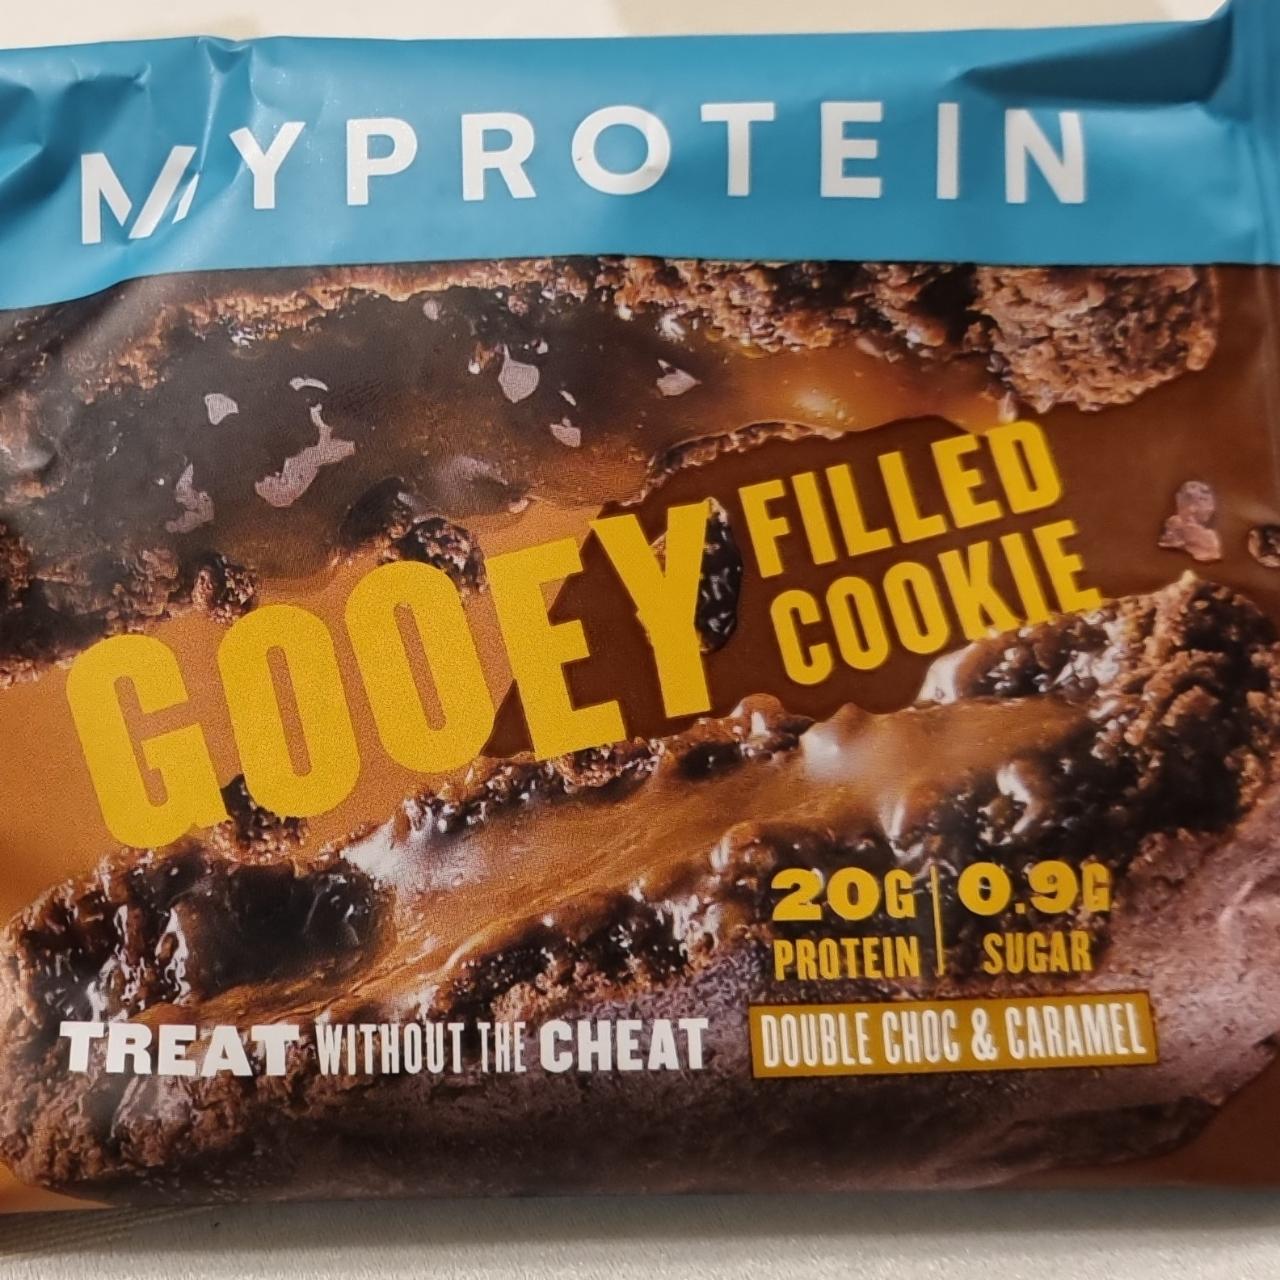 Fotografie - Gooey Filled cookie double choc & caramel MyProtein